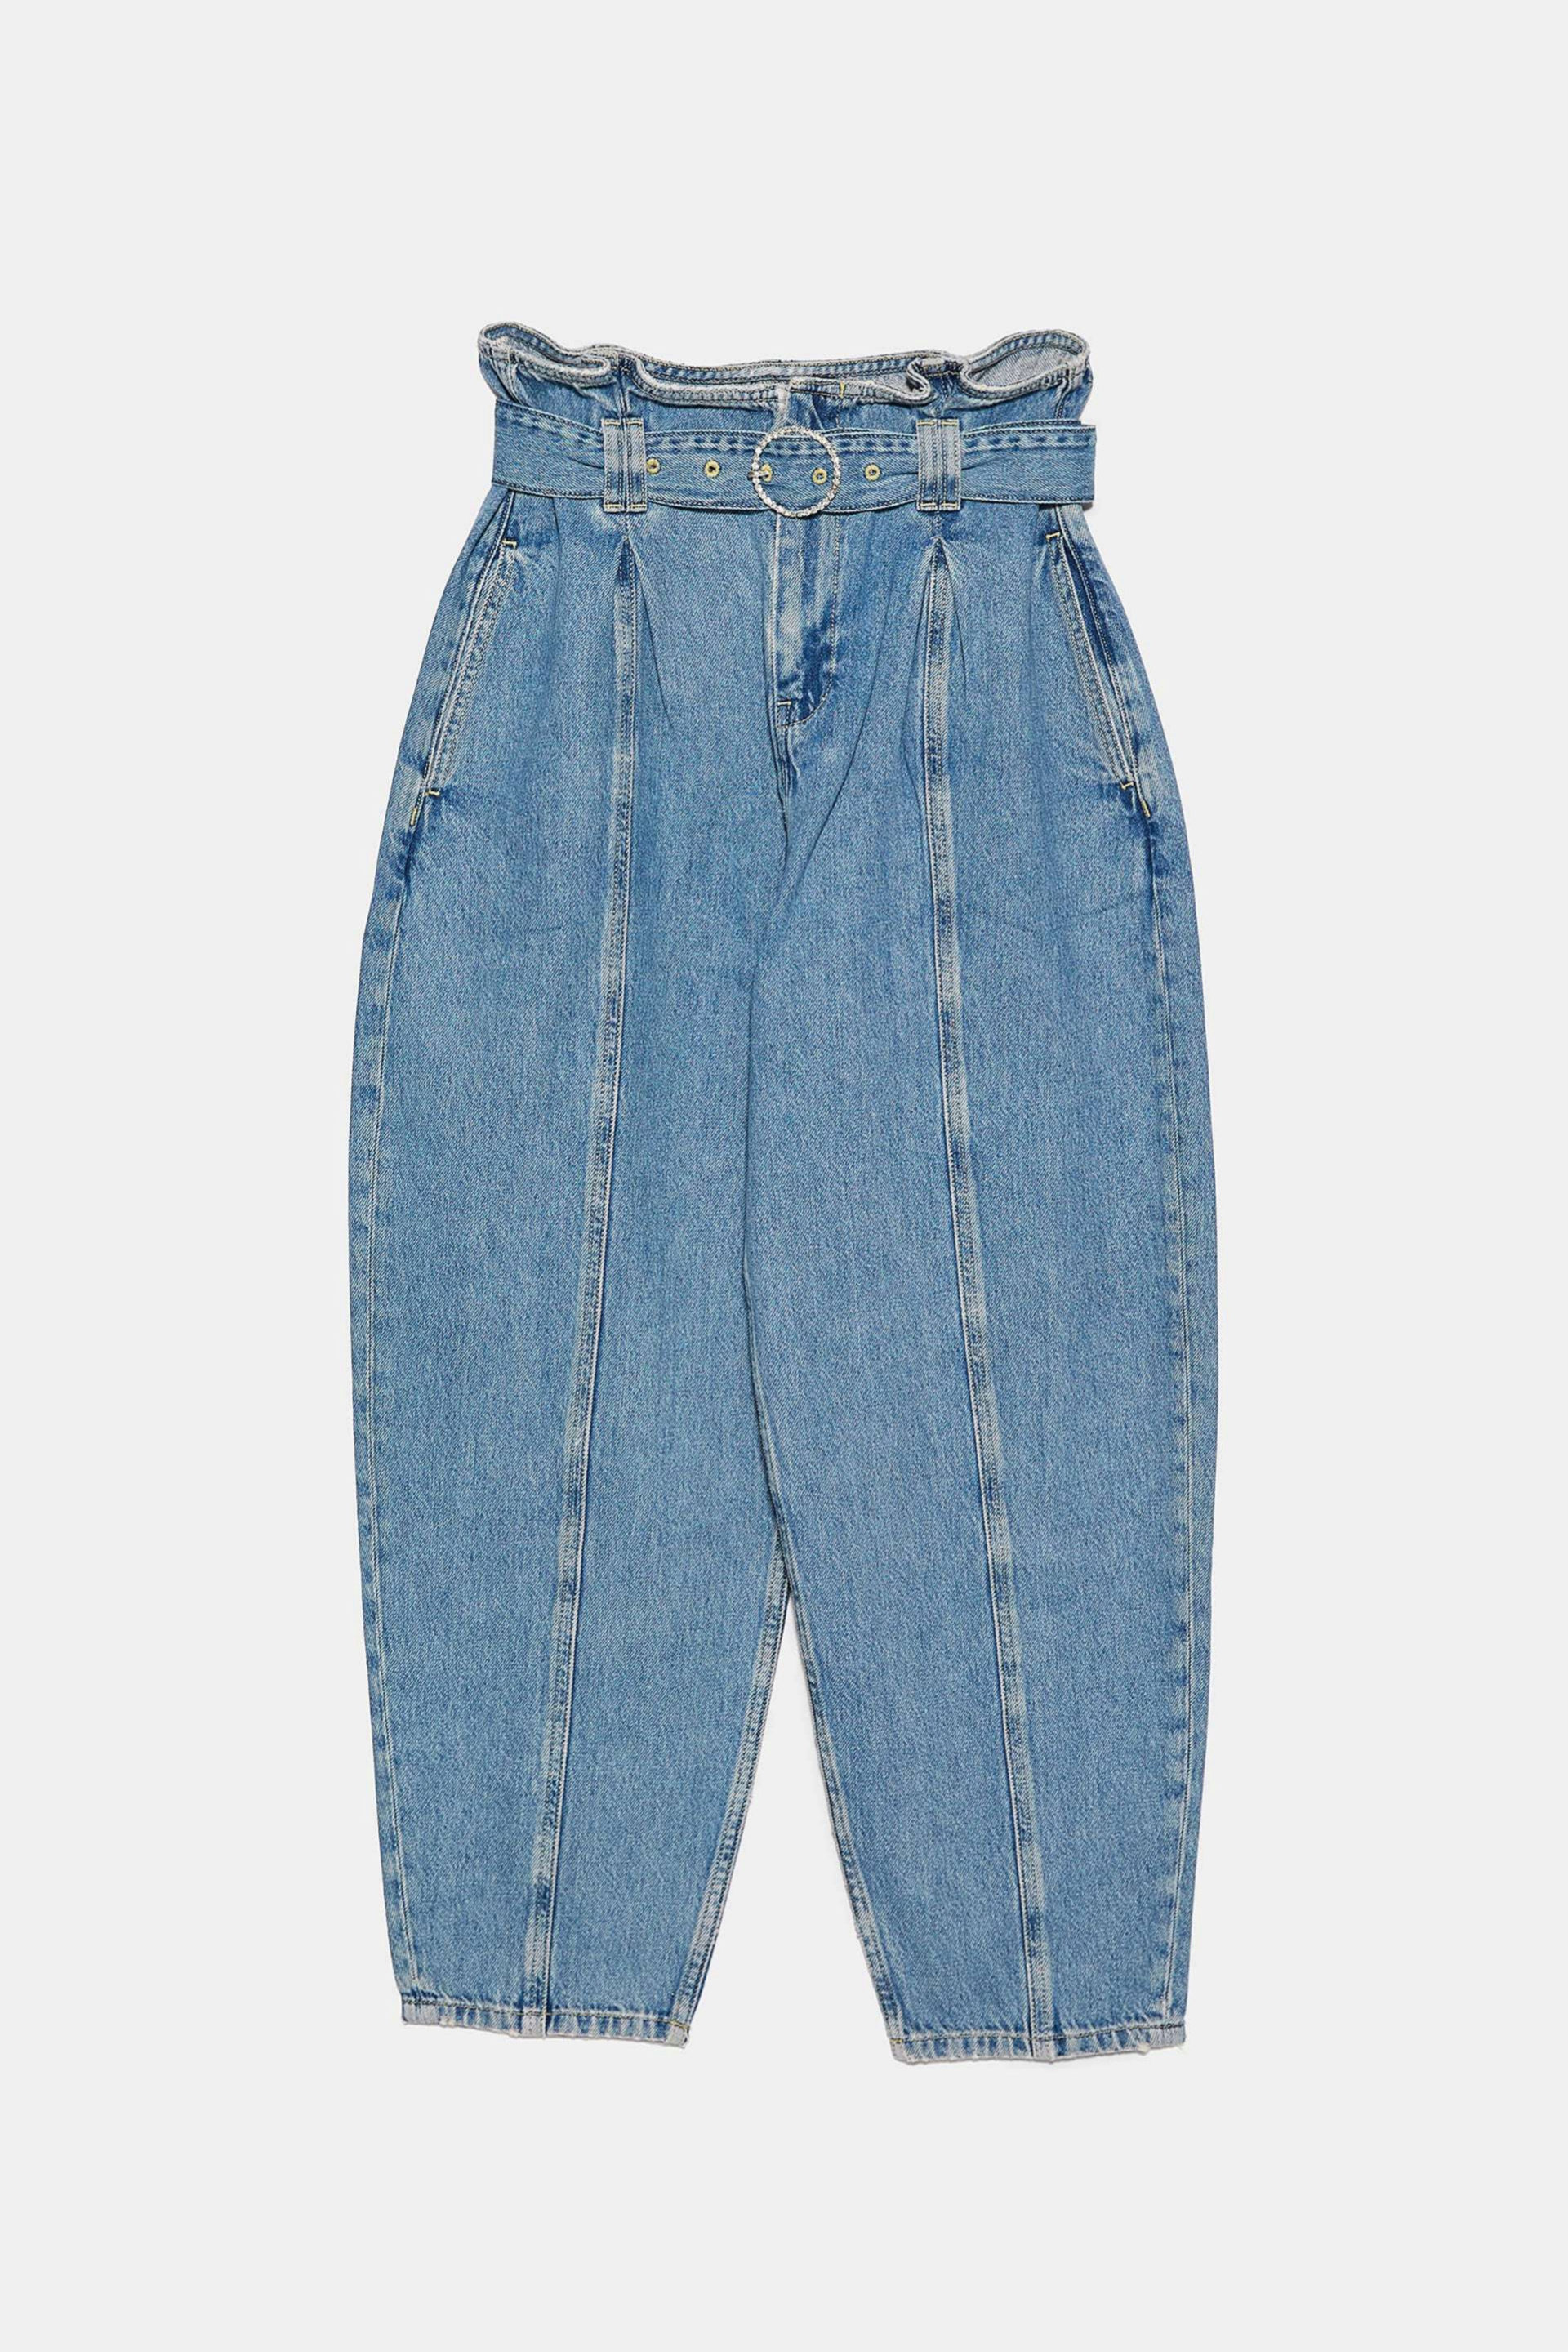 Jeans de corte slouchy de Zara (29,95)